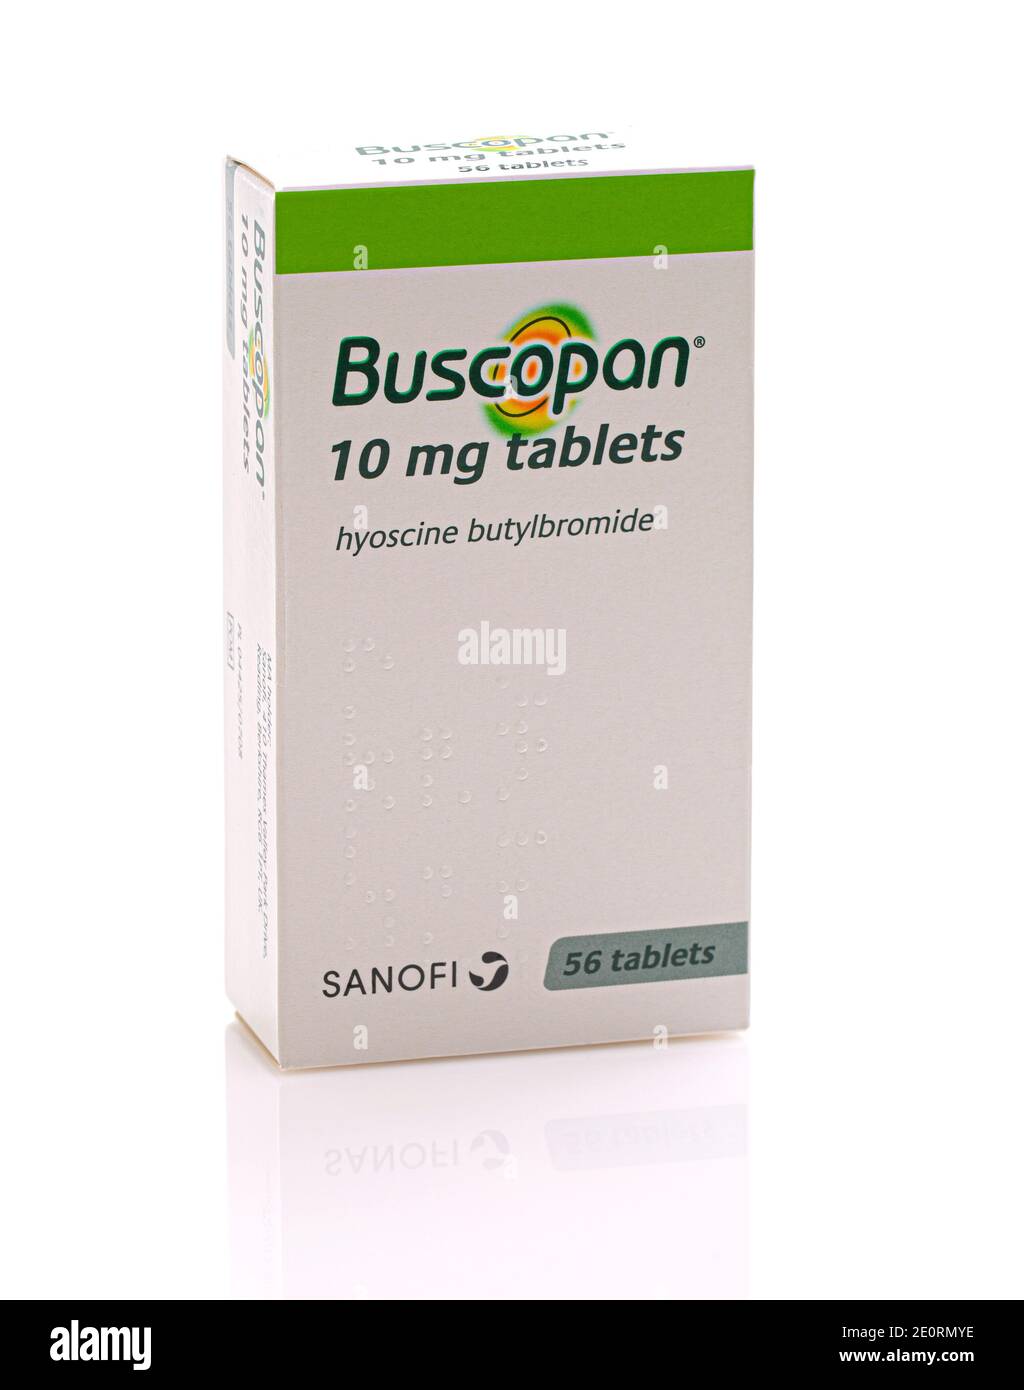 SWINDON, Großbritannien - 2. JANUAR 2021: Paket von Buscopan 10mg Tabletten auf weißem Hintergrund. Stockfoto